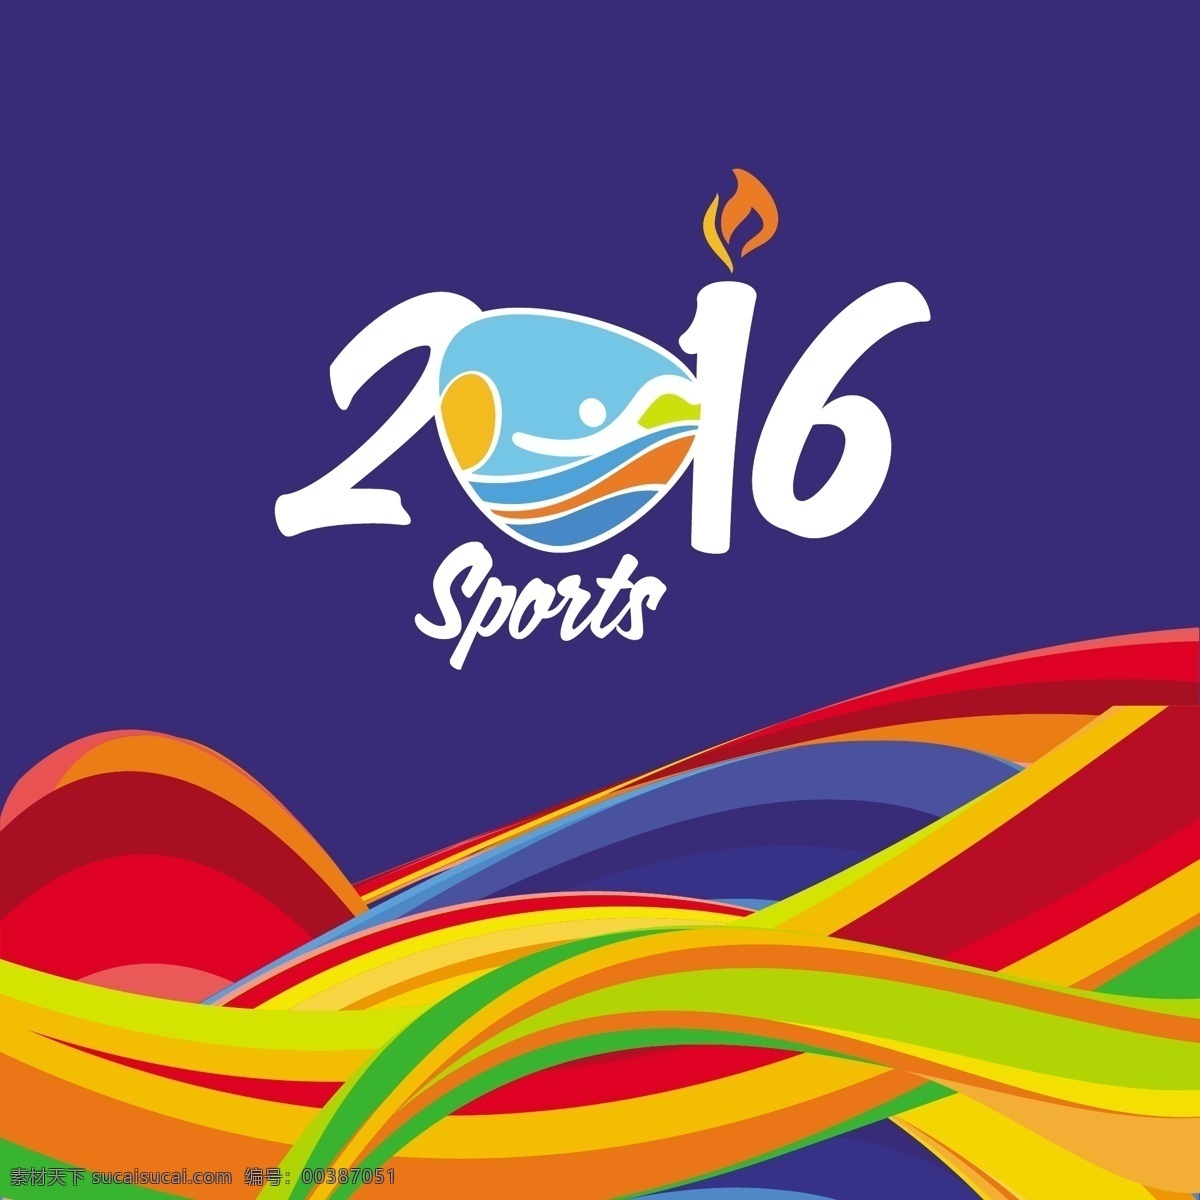 里约 奥运会 背景 海报 里约奥运海报 2016 里约奥运展板 奥运 展架 奥运会图片 奥运加油 奥运会广告 体育运动海报 蓝色